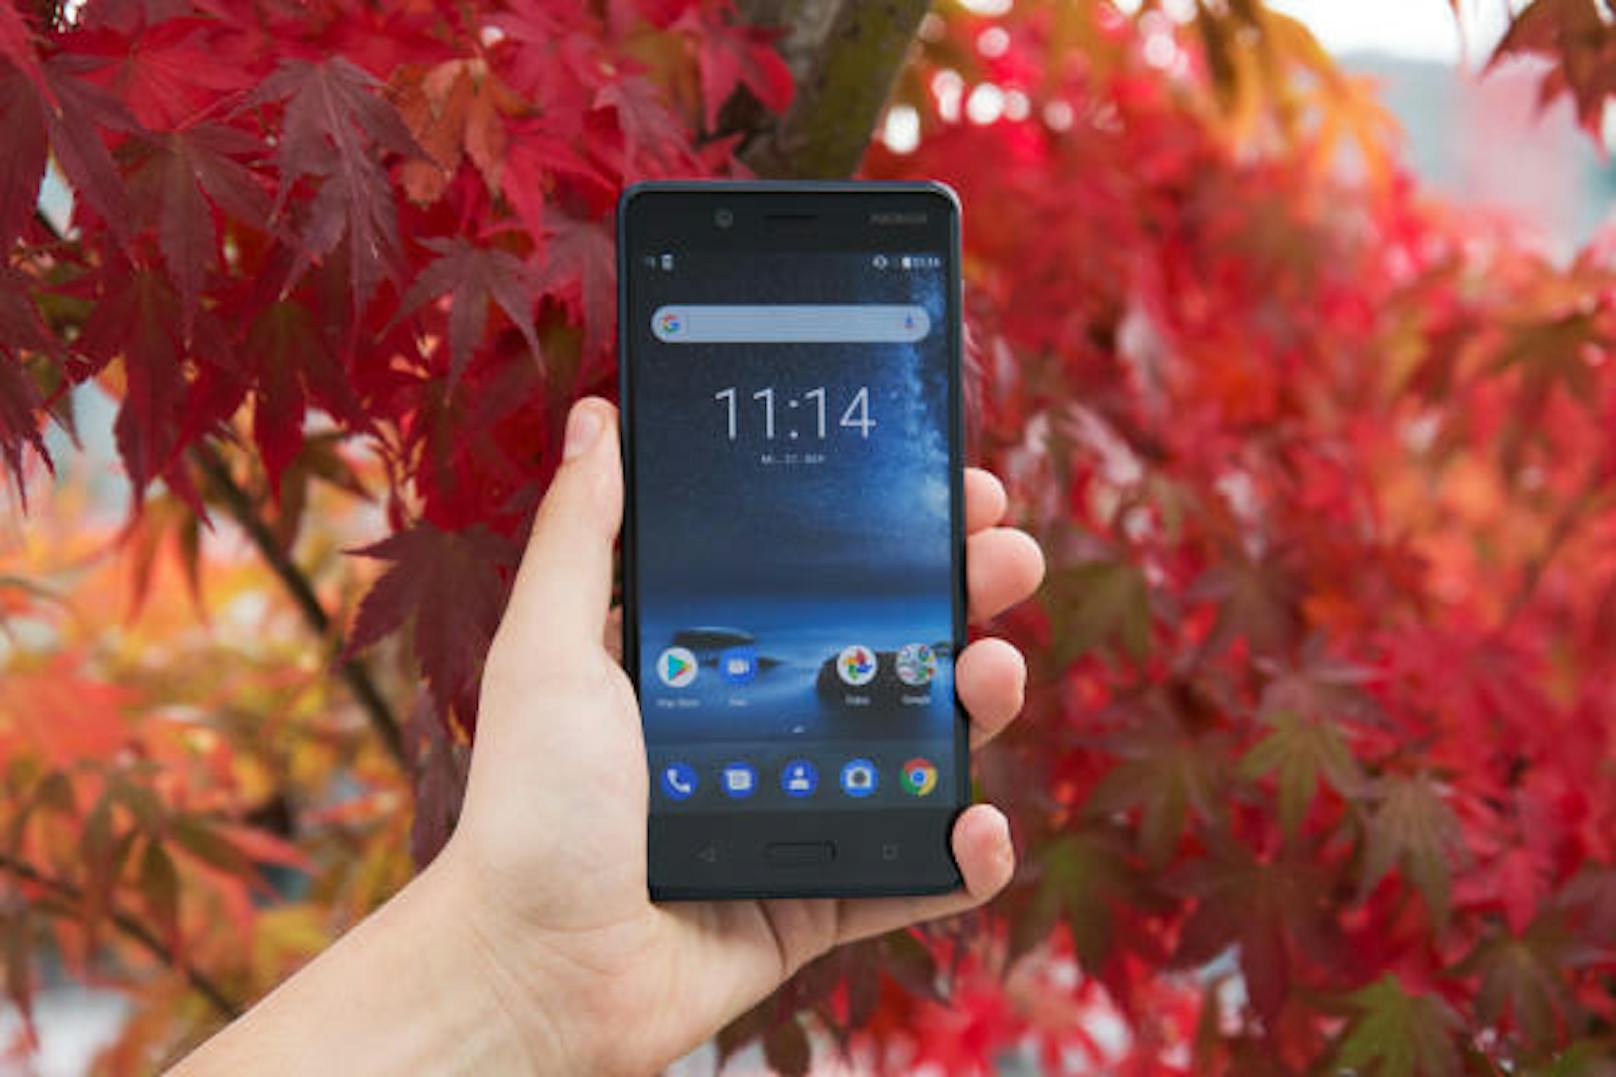 Das Nokia 8 überzeugt in erster Linie durch sein großes und kontrastreiches QHD-Display. Mit fast 3,7 Millionen Bildpunkten auf einer 16:9-Anzeige ist die Darstellung mit 554 Pixel pro Zoll gestochen scharf.